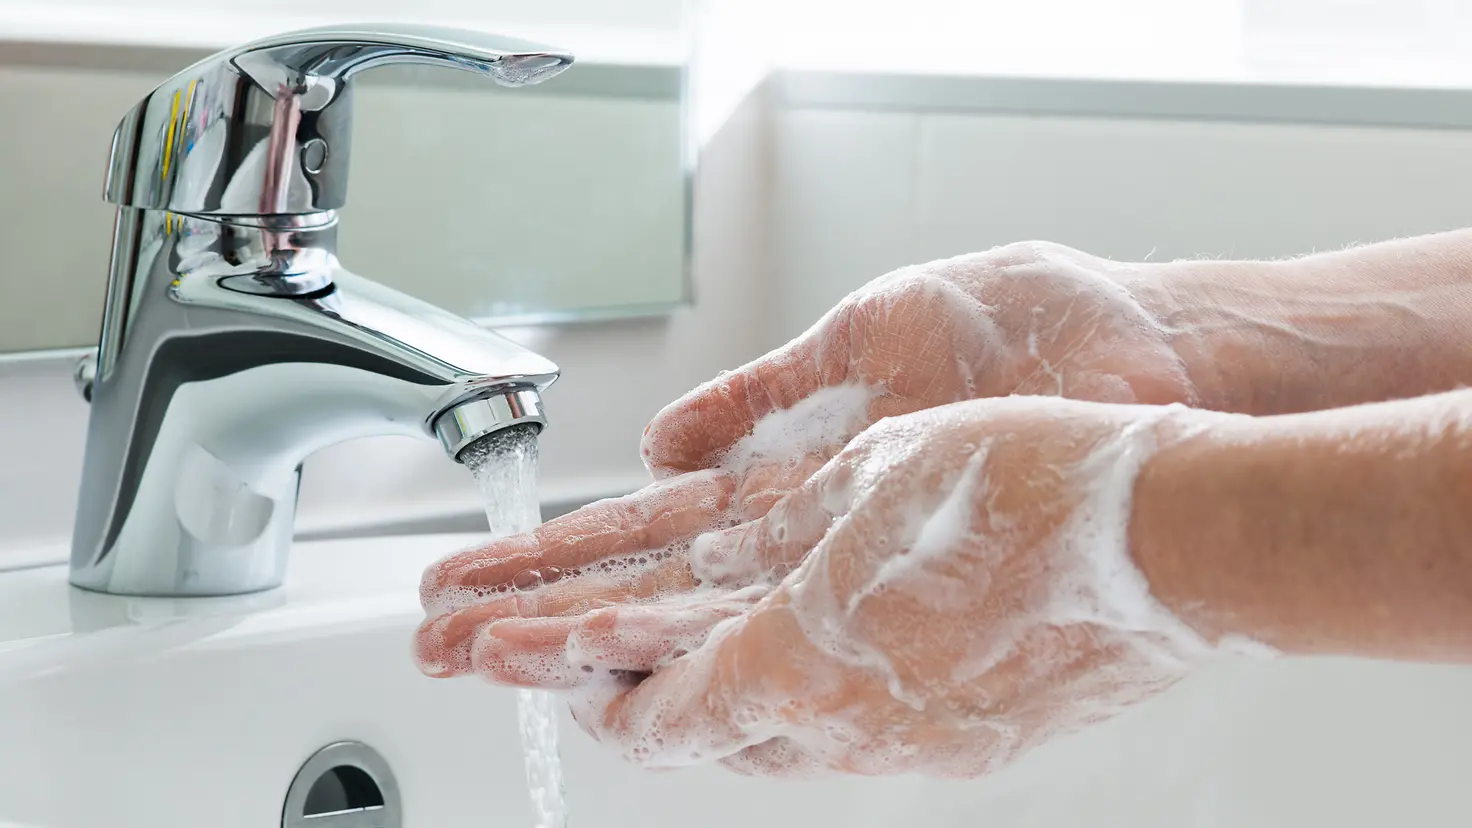 Zu sehen ist, wie Hände mit viel Seife unter fließendem Wasser gewaschen werden